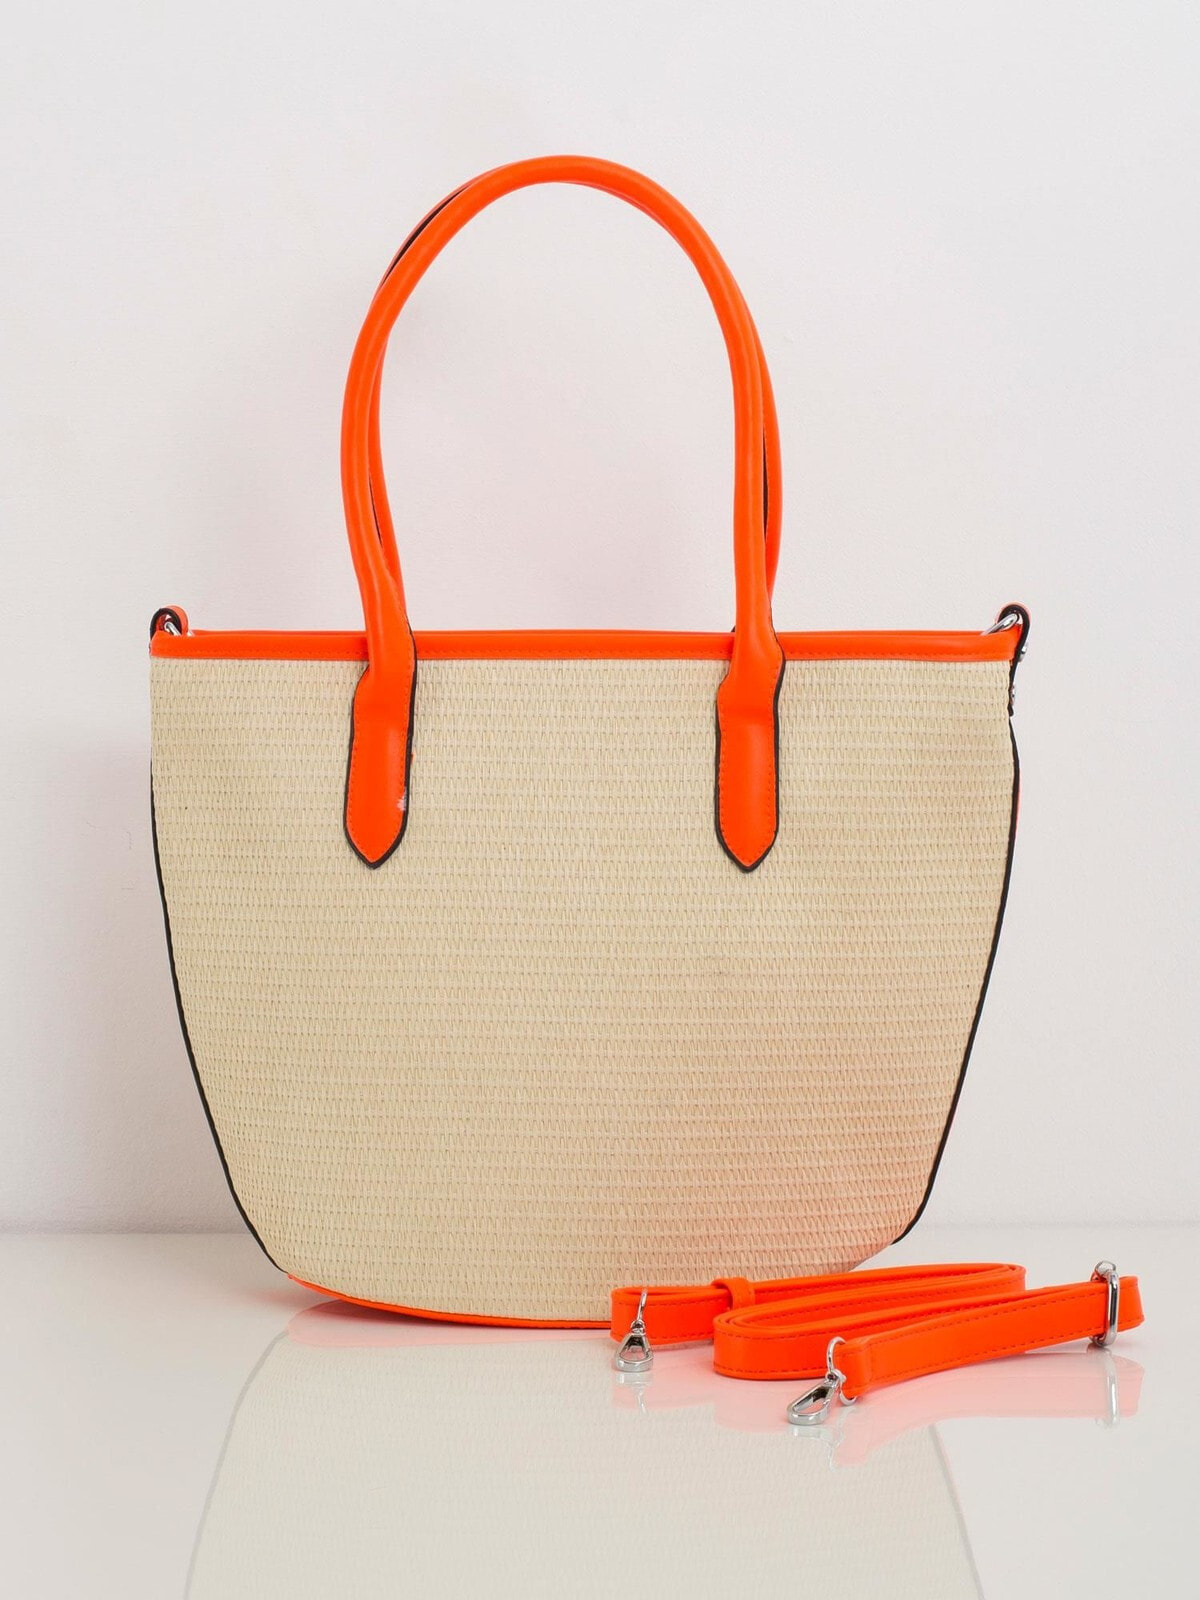 Женская сумка Factory Price застежка-молния, подкладка, внутренние карманы, регулируемый ремень, внешний карман на молнии, ручки.